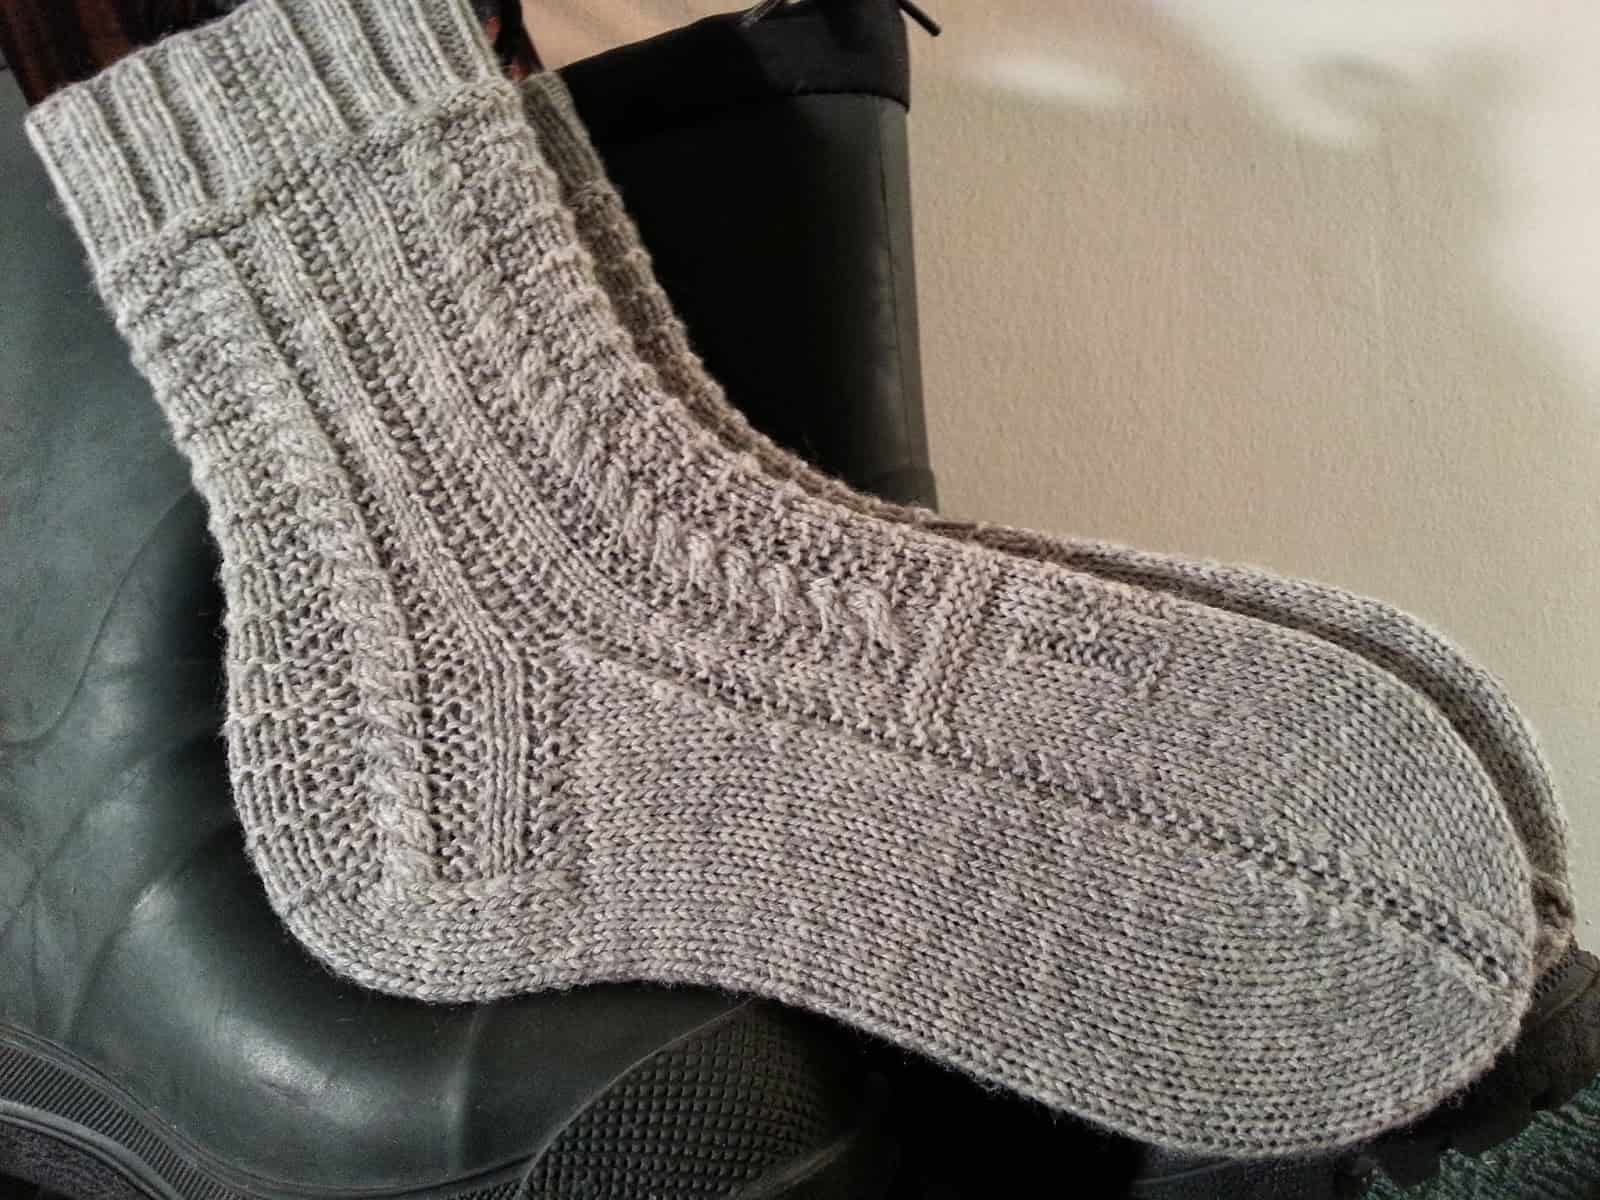 The gansey sock